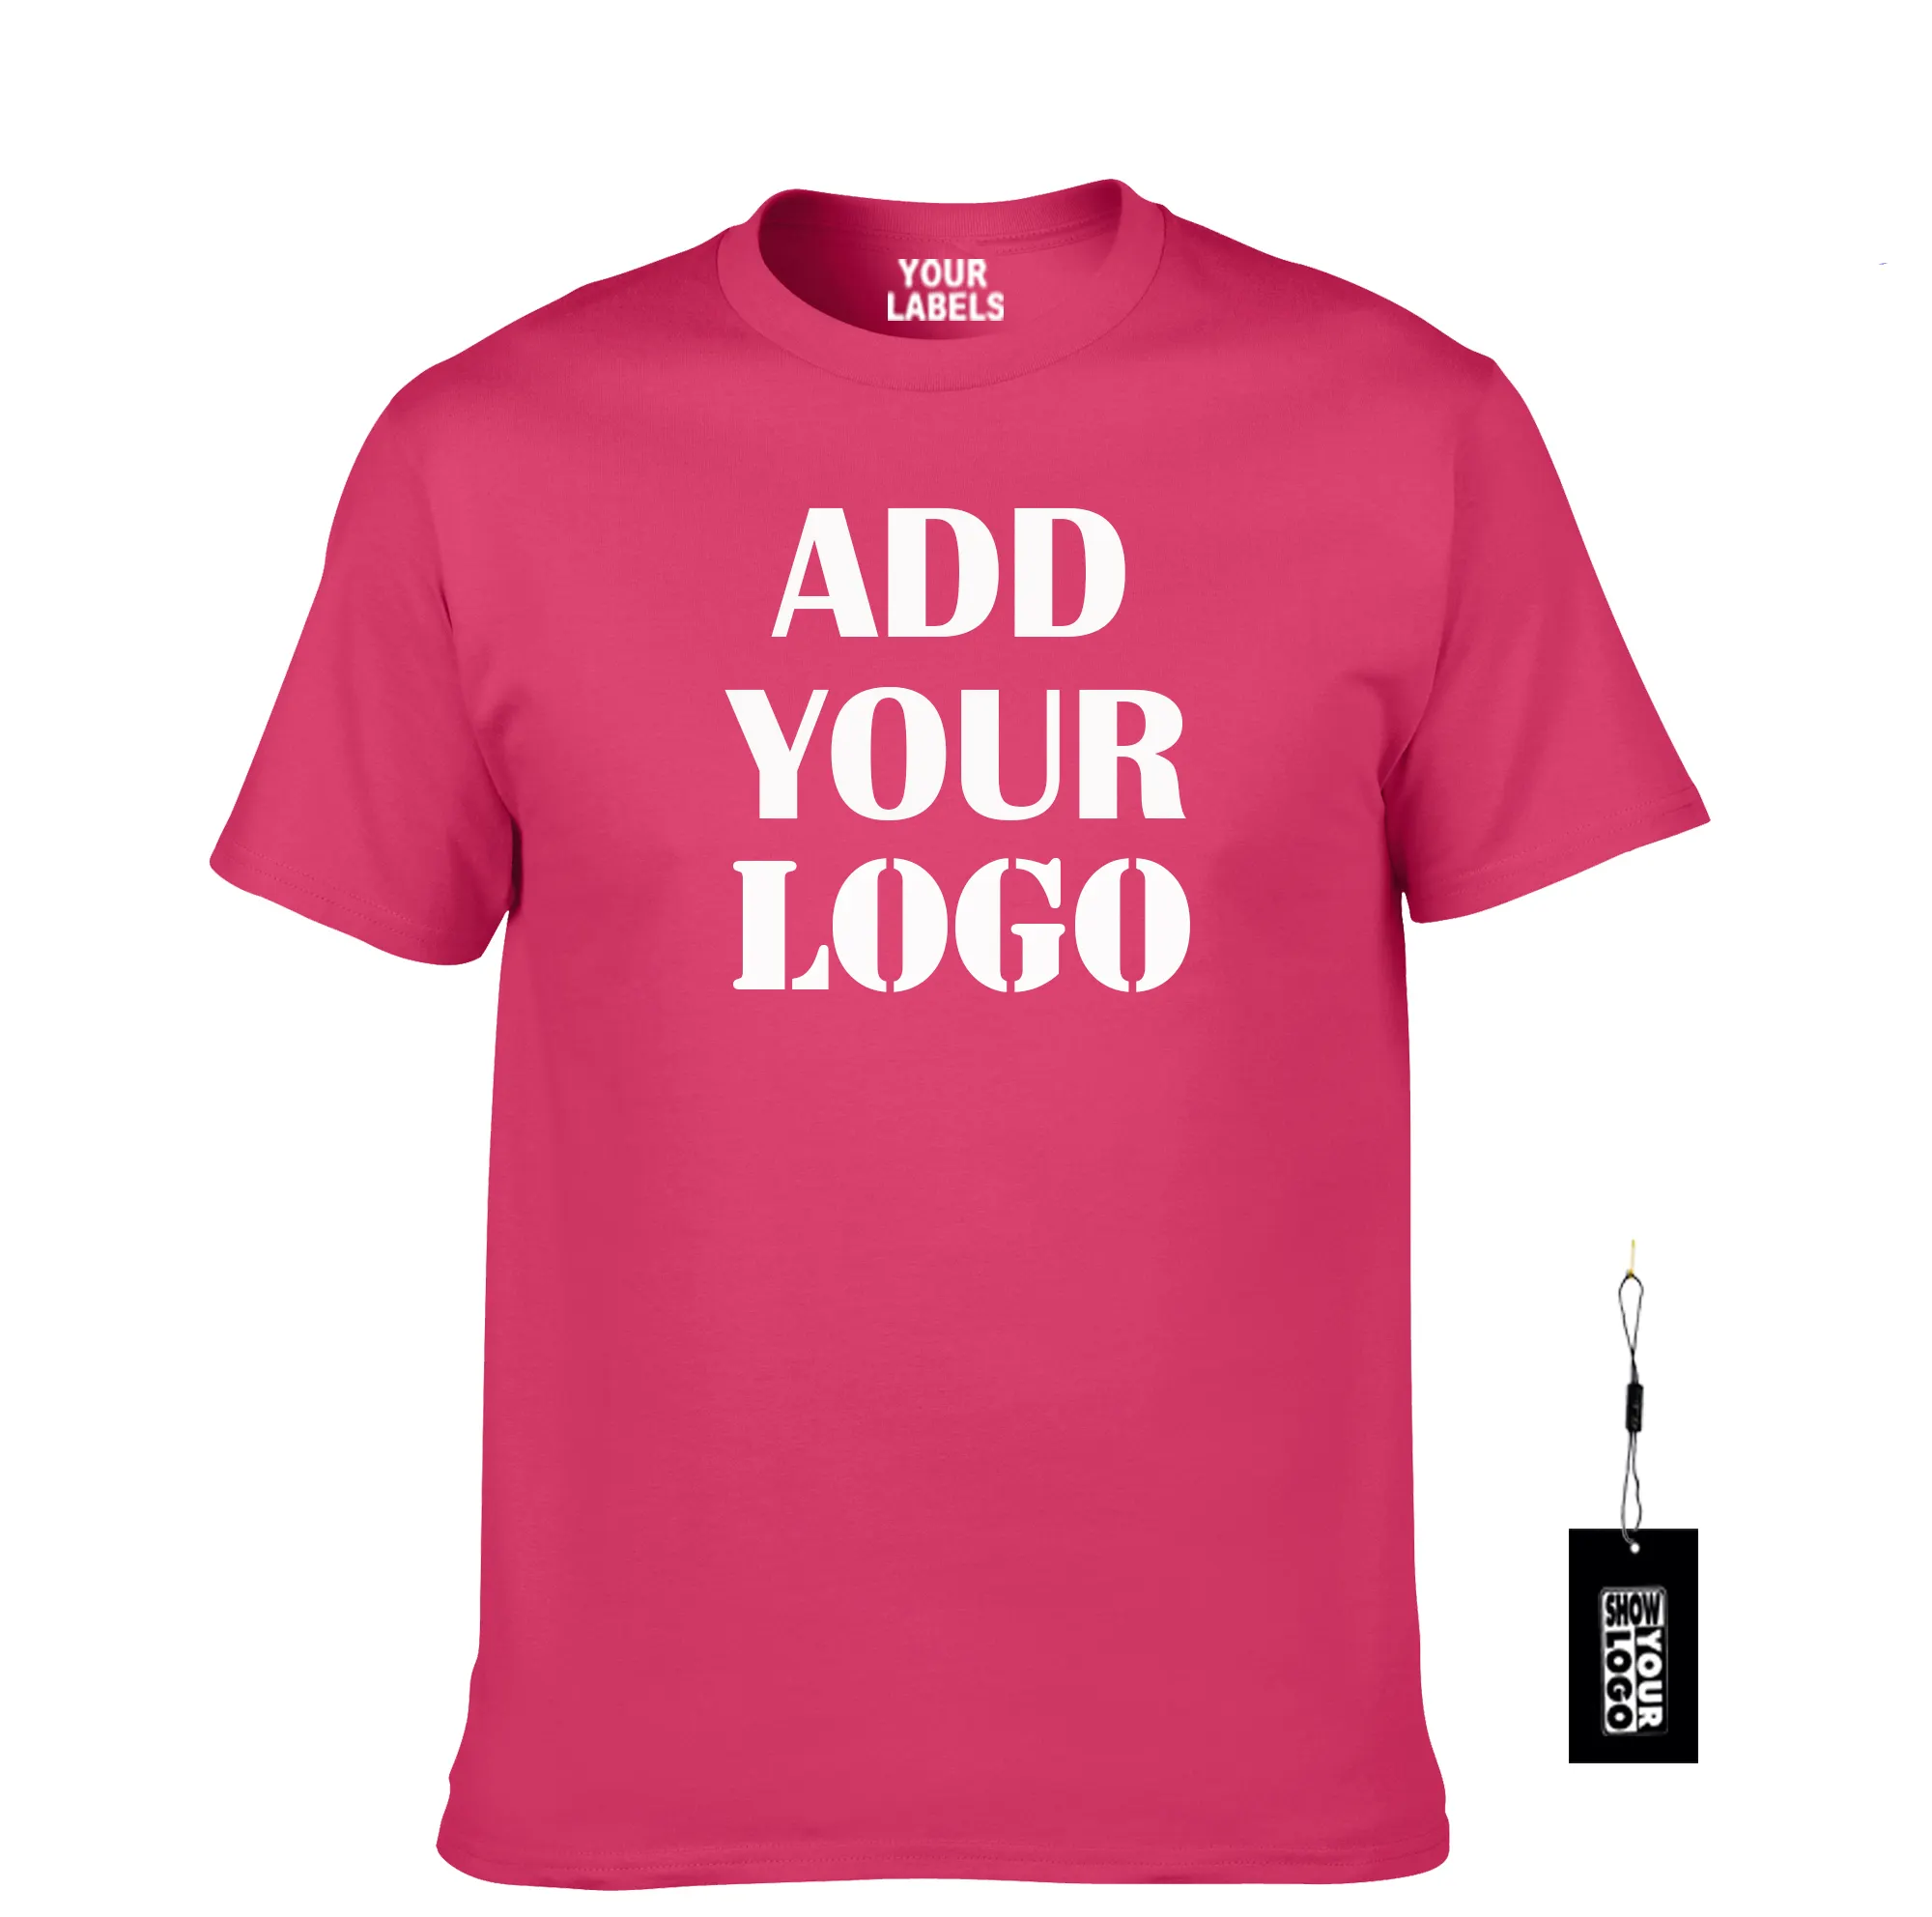 Özel baskı t shirt boyutu S M L XL XXL XXXL 4XL 5XL logo baskı, ücretsiz İç etiketleri, özel baskı etiketleri mix boyutu ve renkleri